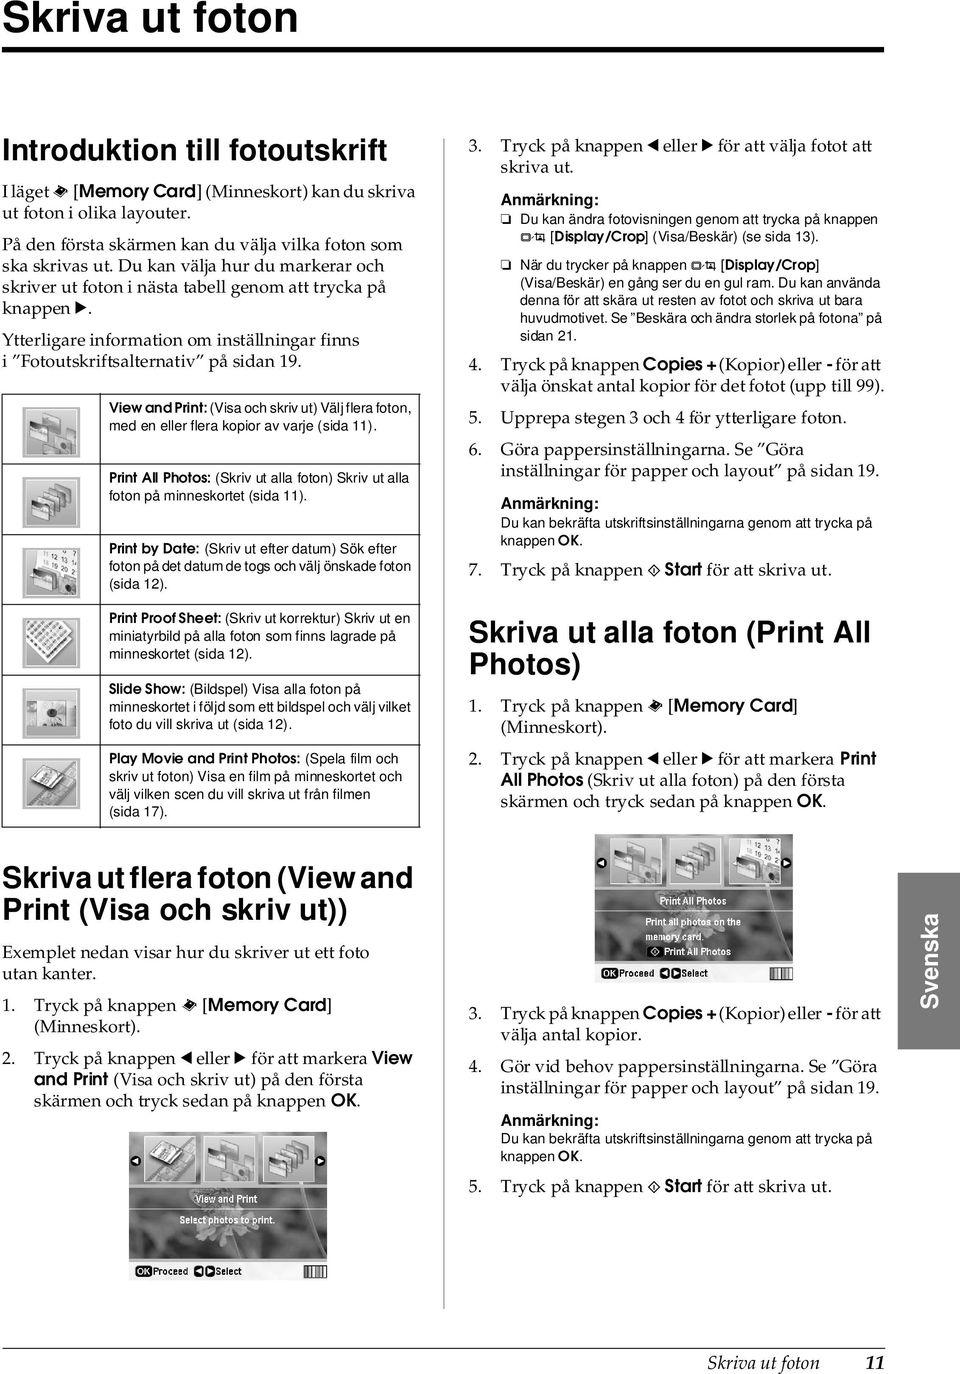 View and Print: (Visa och skriv ut) Välj flera foton, med en eller flera kopior av varje (sida 11). Print All Photos: (Skriv ut alla foton) Skriv ut alla foton på minneskortet (sida 11).